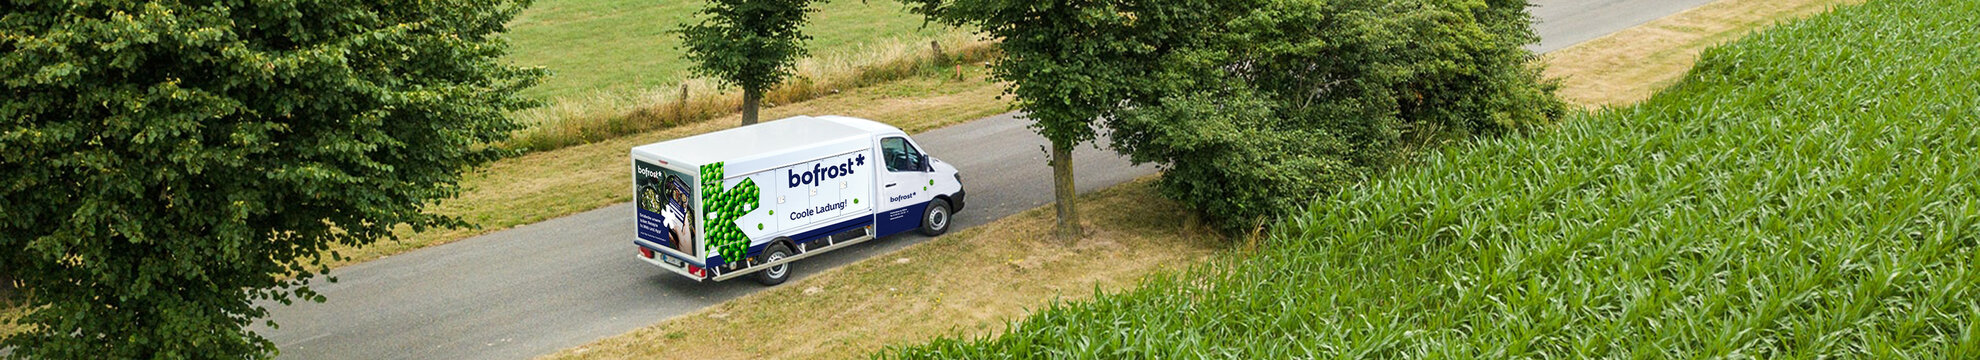 bofrost* Austria GmbH